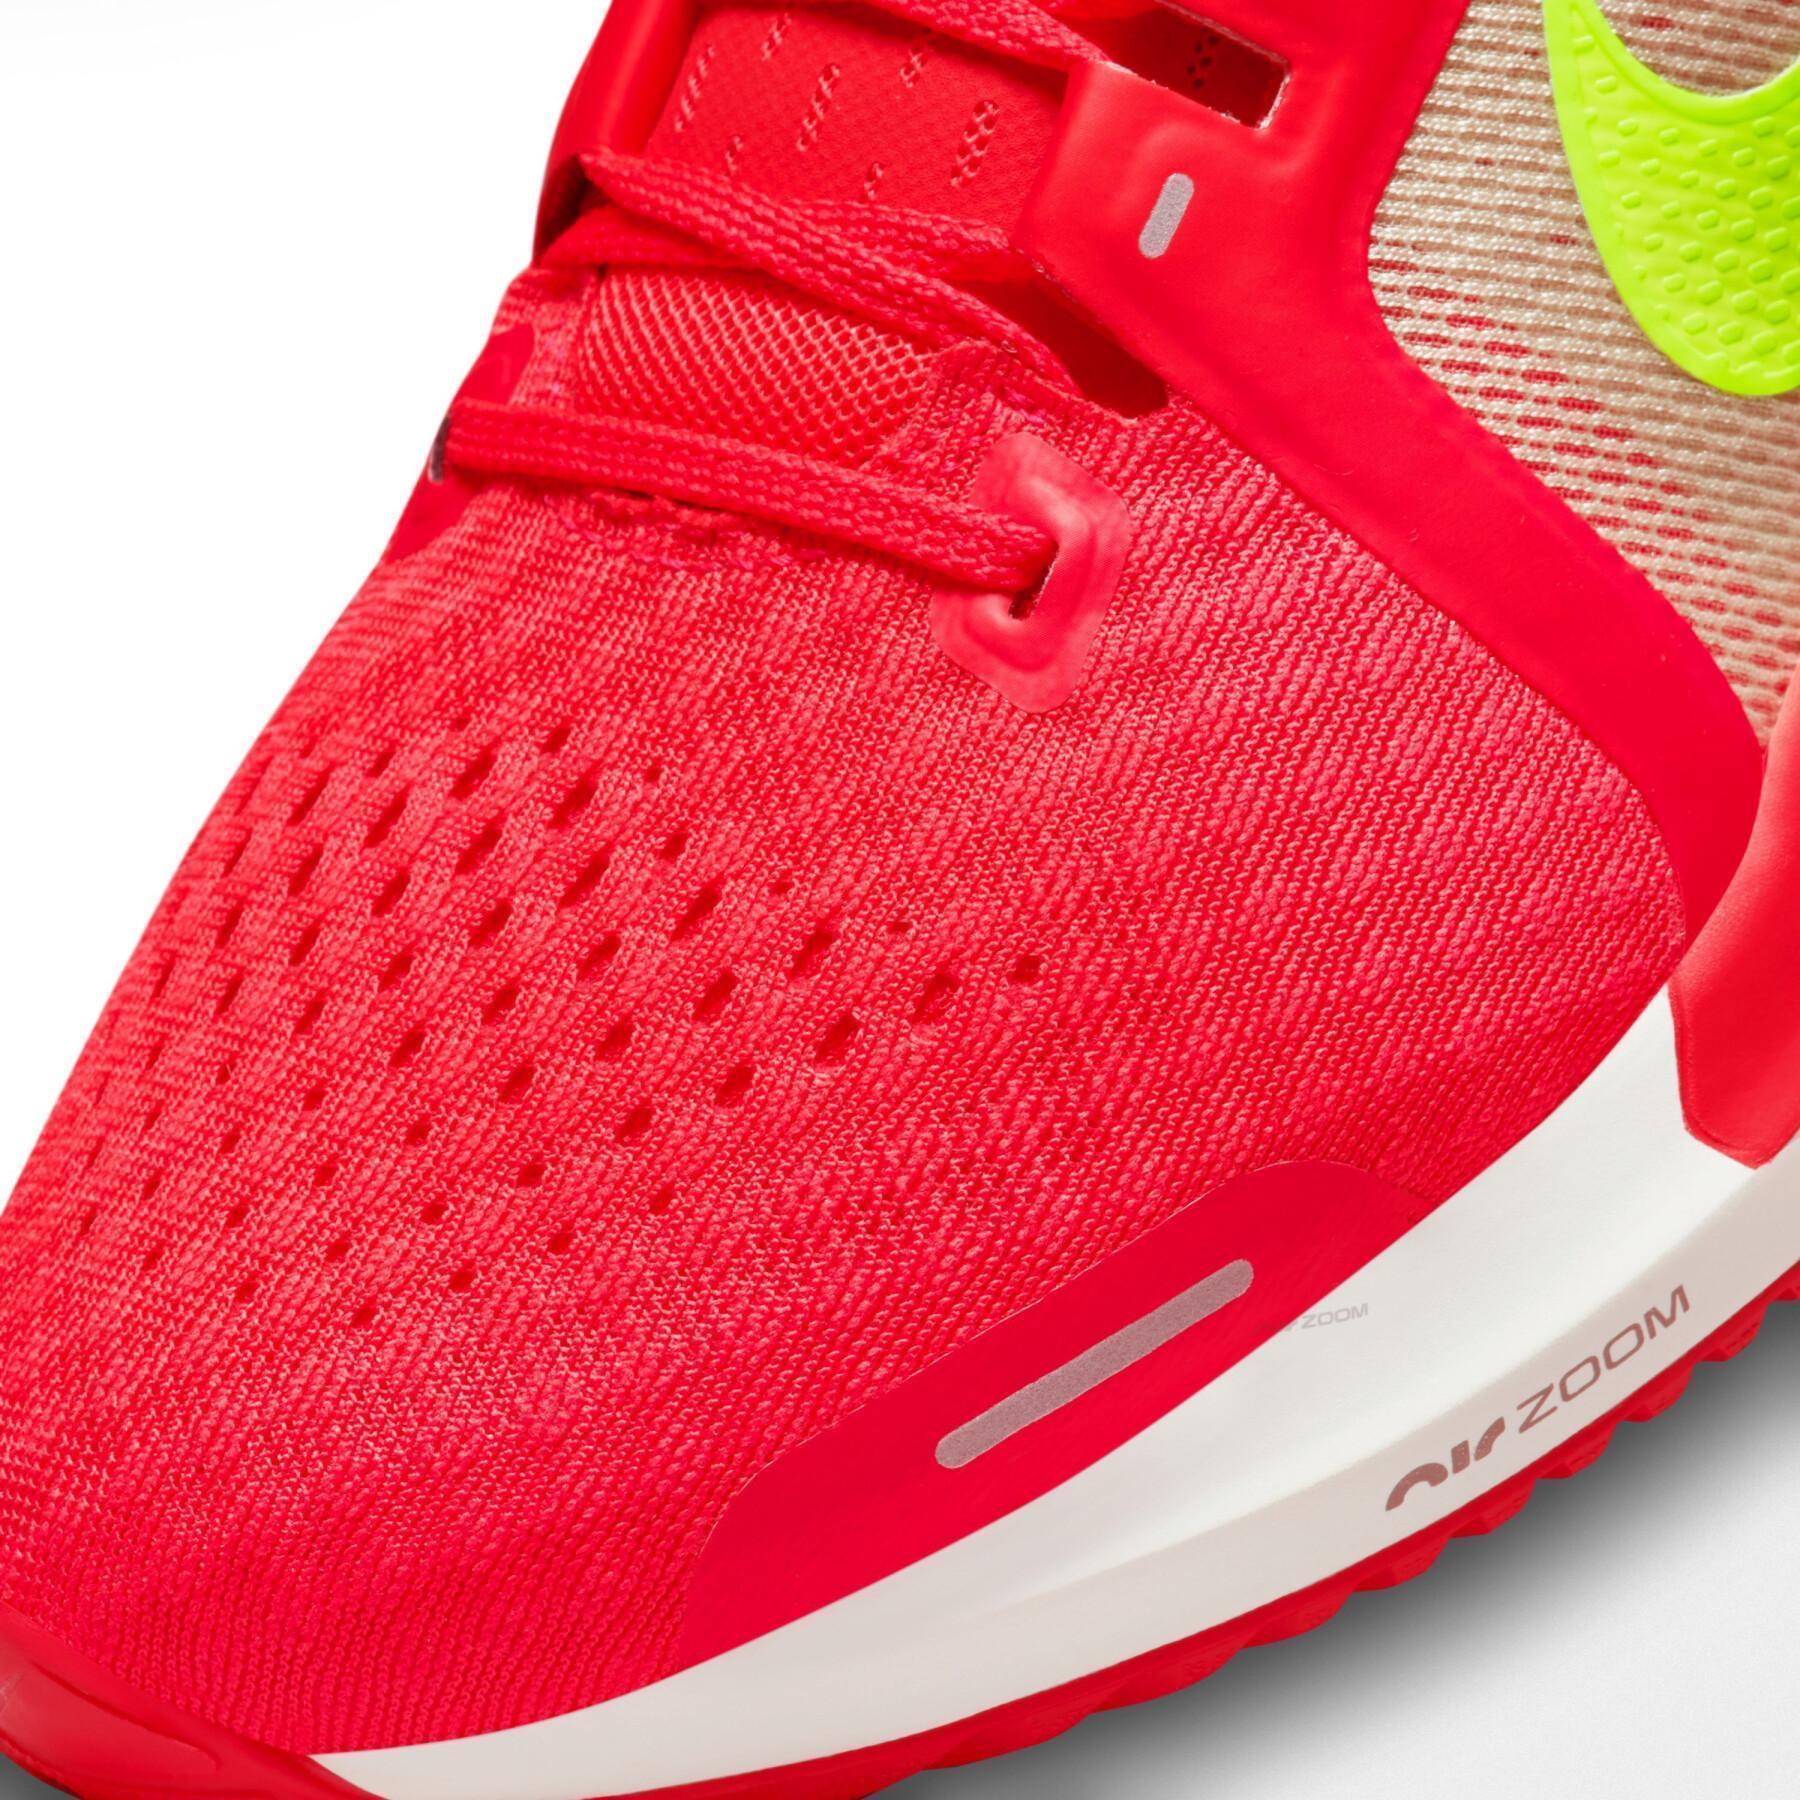 Loopschoenen Nike Air Zoom Vomero 16